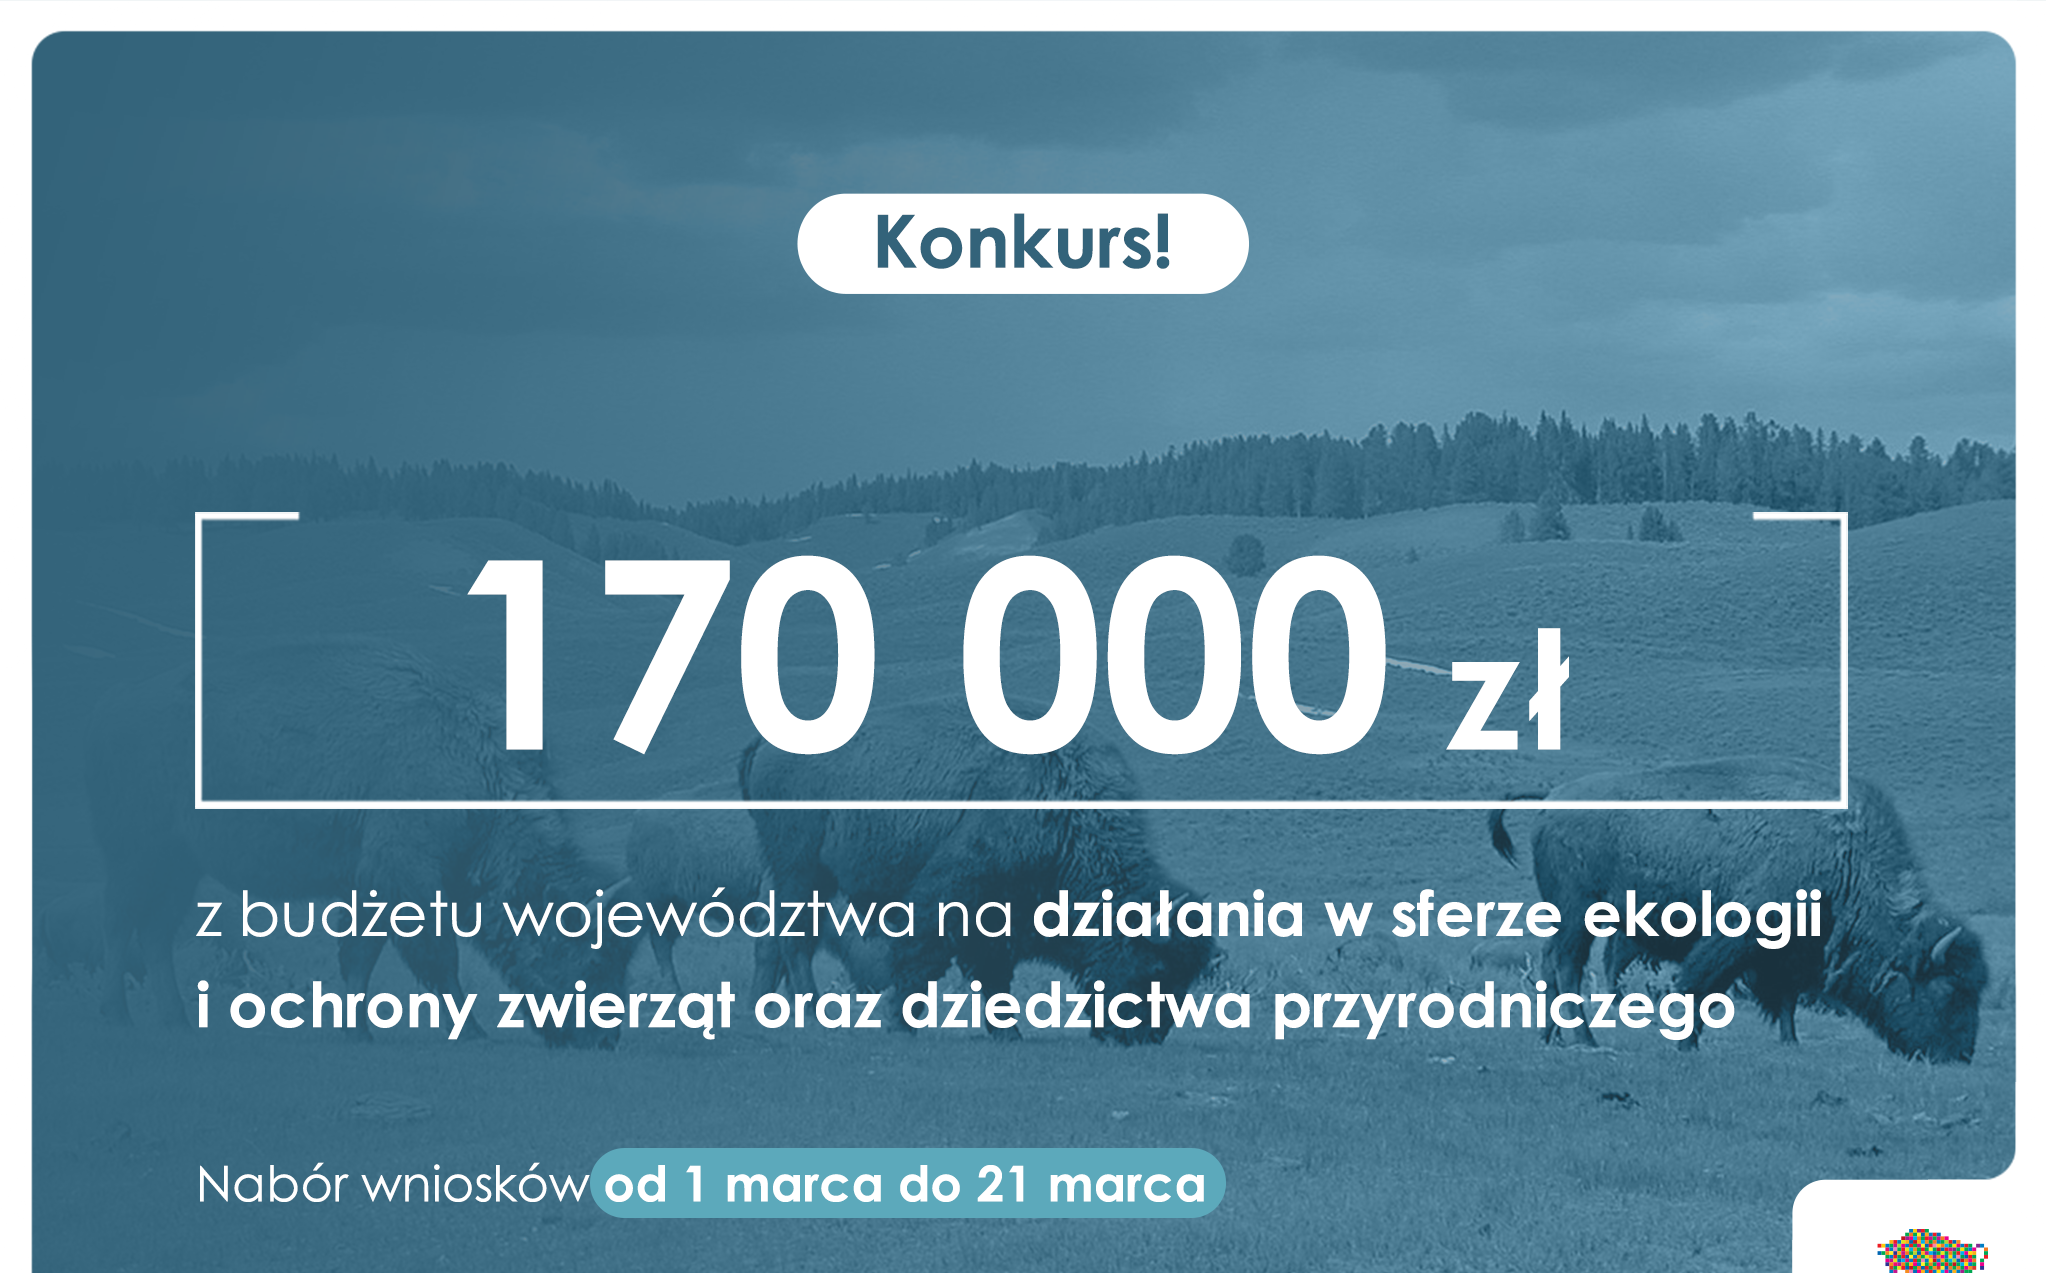 Konkurs w sferze ekologii i ochrony zwierząt oraz dziedzictwa przyrodniczego - 170 000 zł